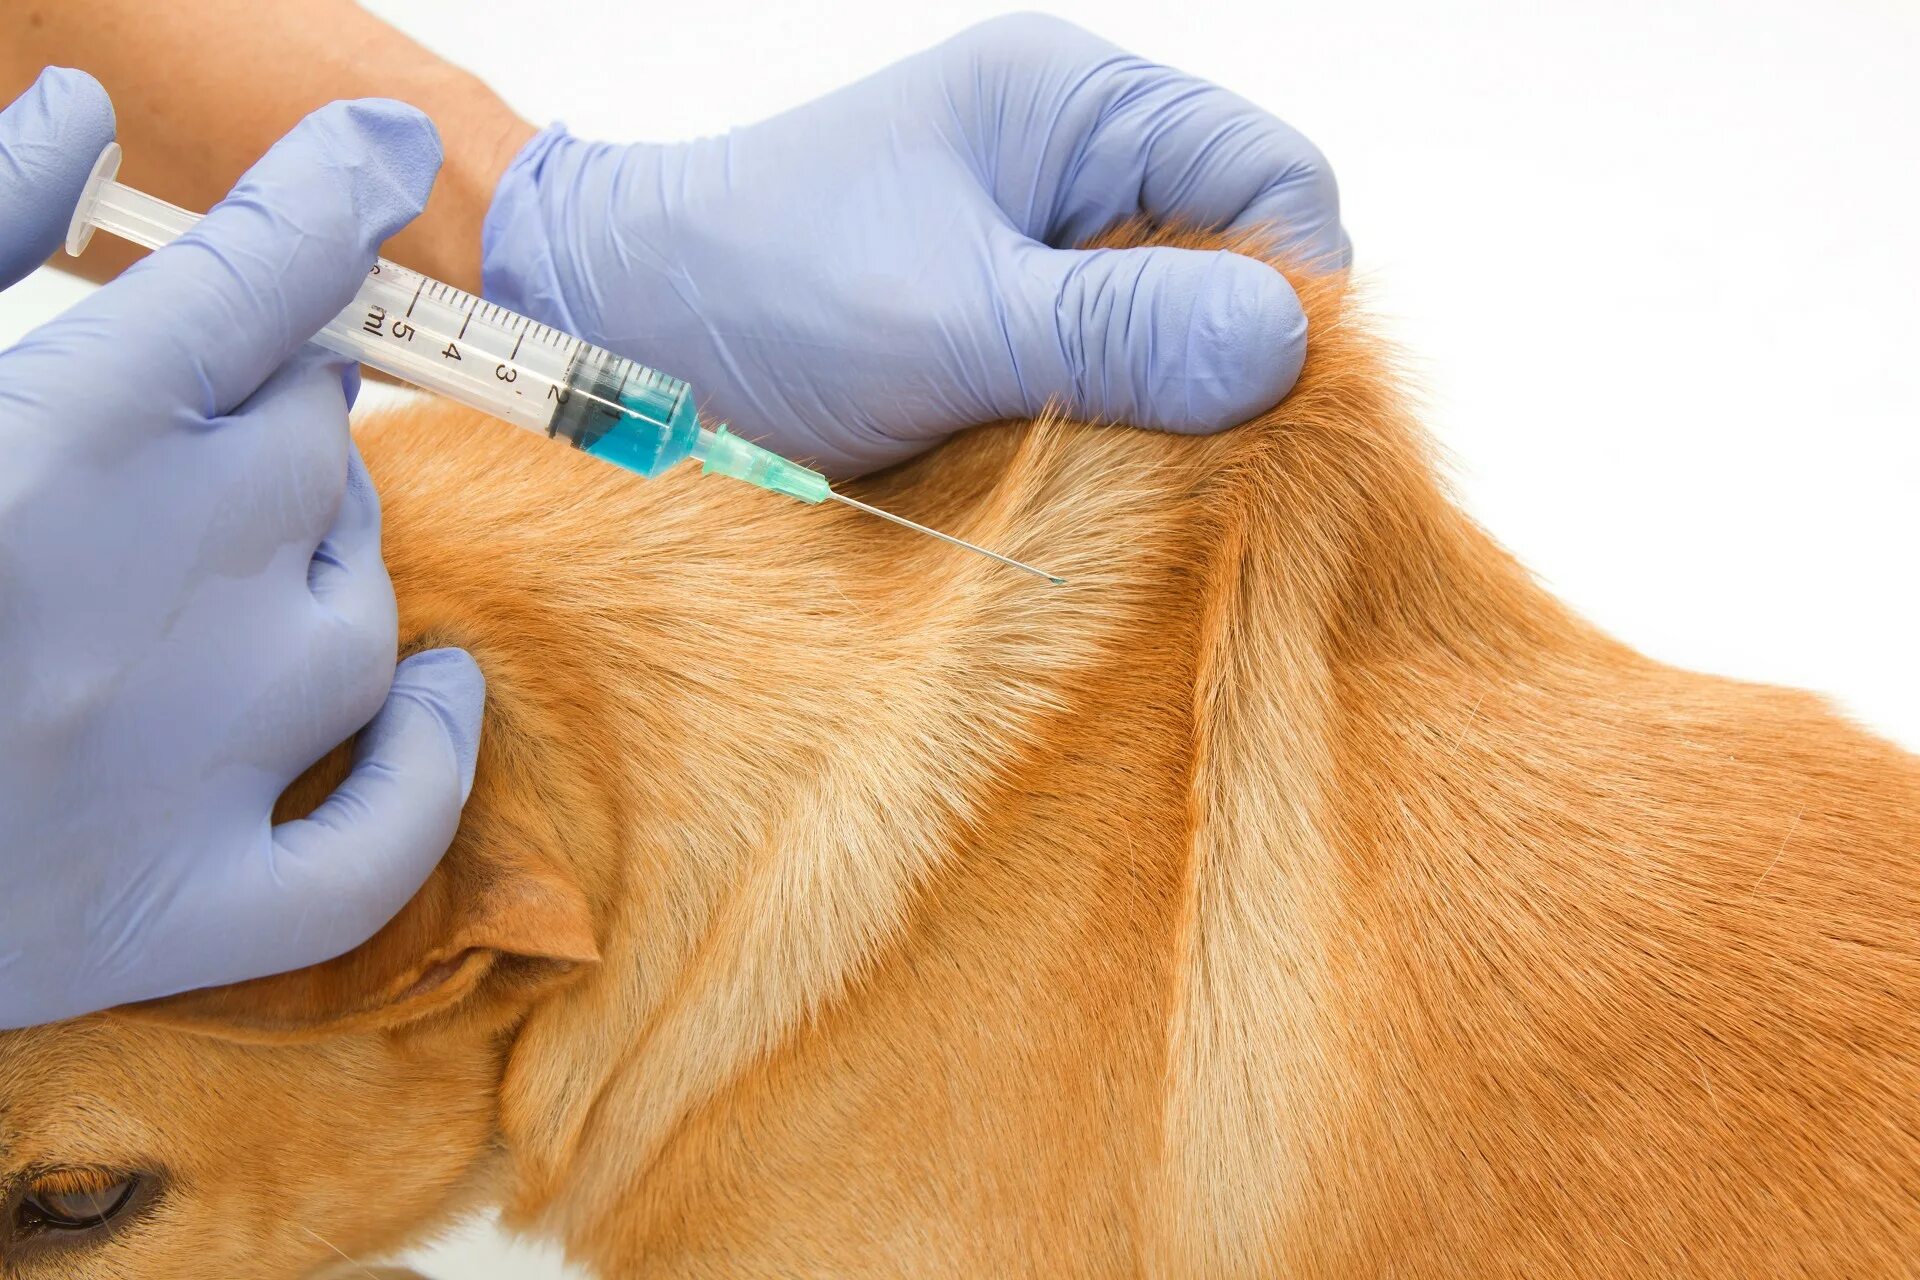 Куда вводится вакцина. Укол собаке внутримышечно в холку. Укол собаке подкожно в холку. Укол собаке в холку домашних условиях. Подкожная инъекция в живот.